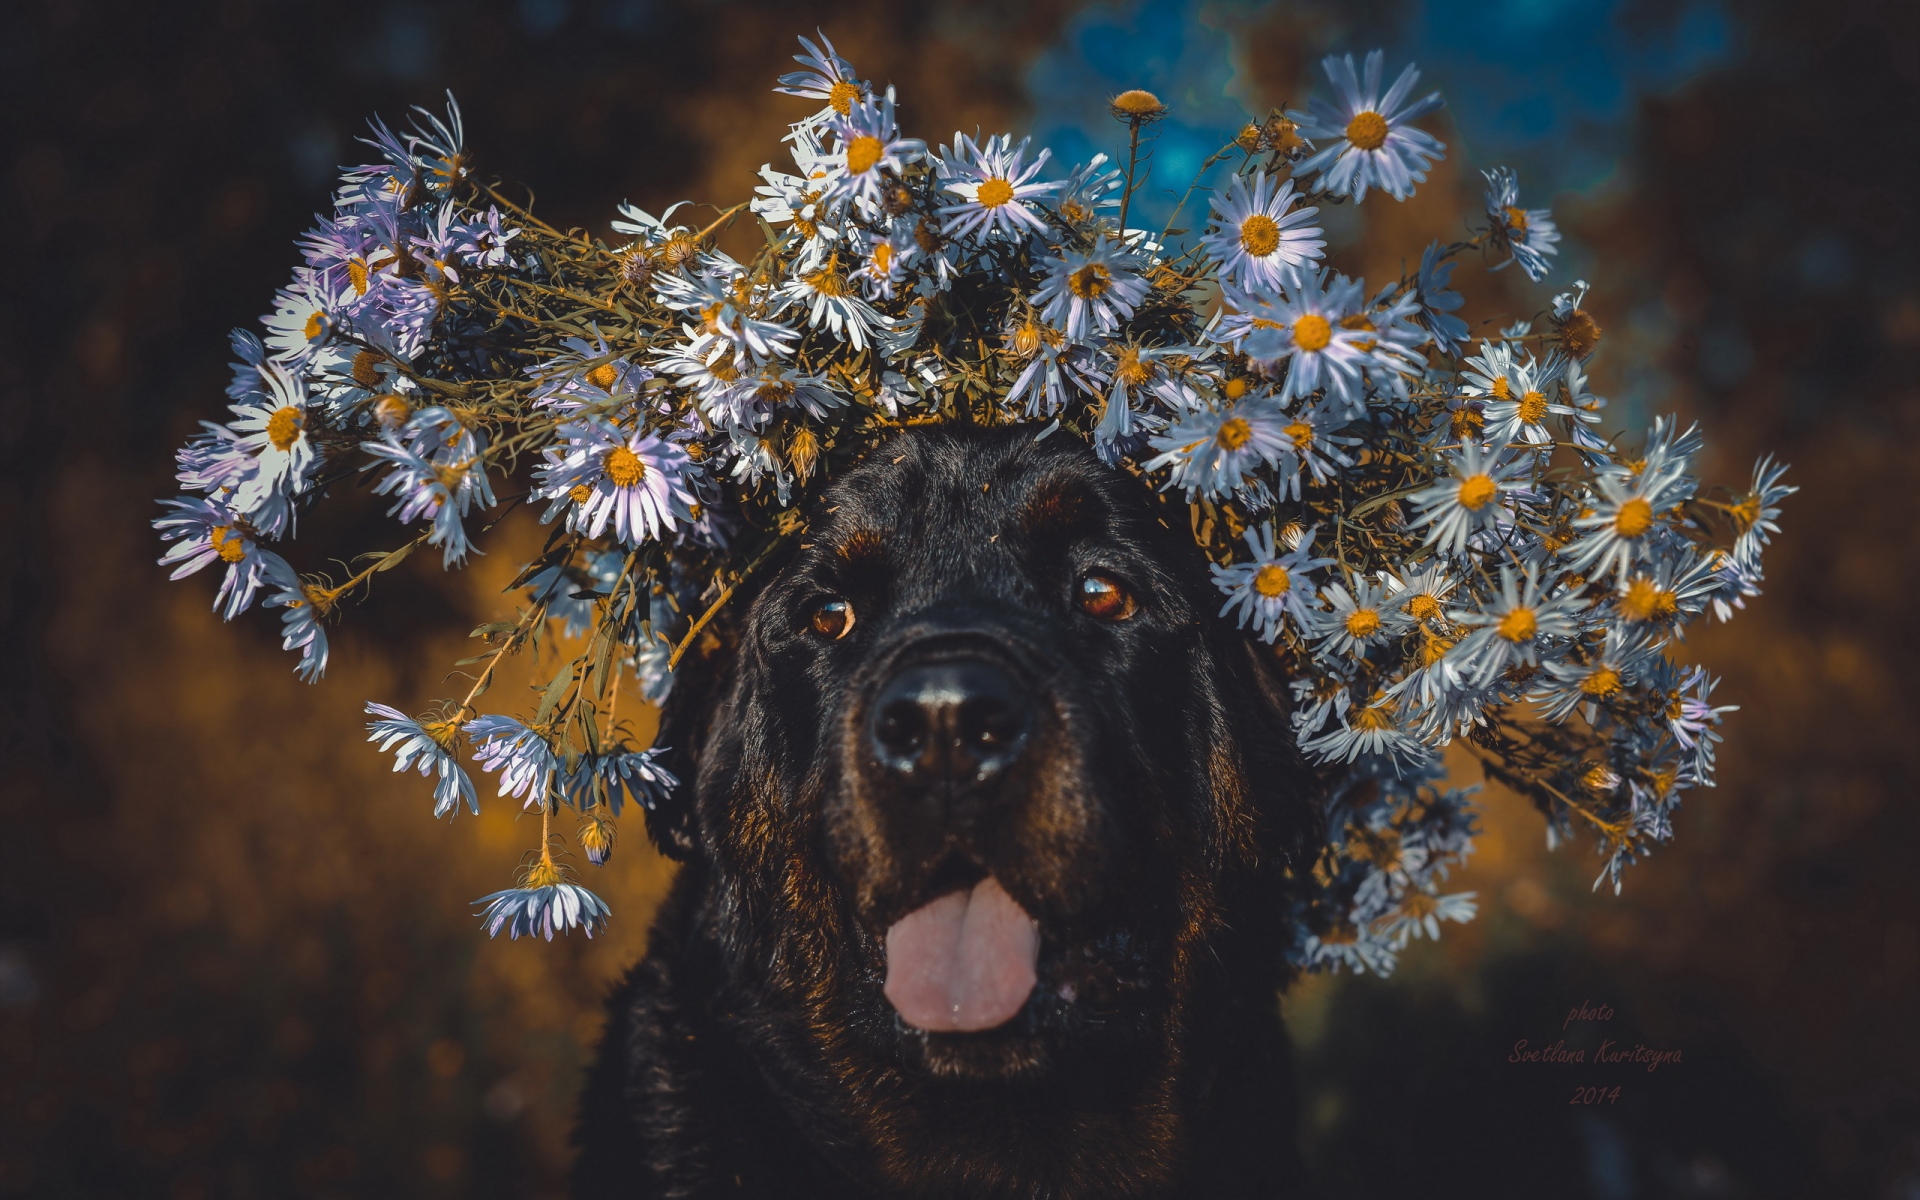 Картинки Собака, выступающий язык, лицо, цветы, венок фото и обои на рабочий стол